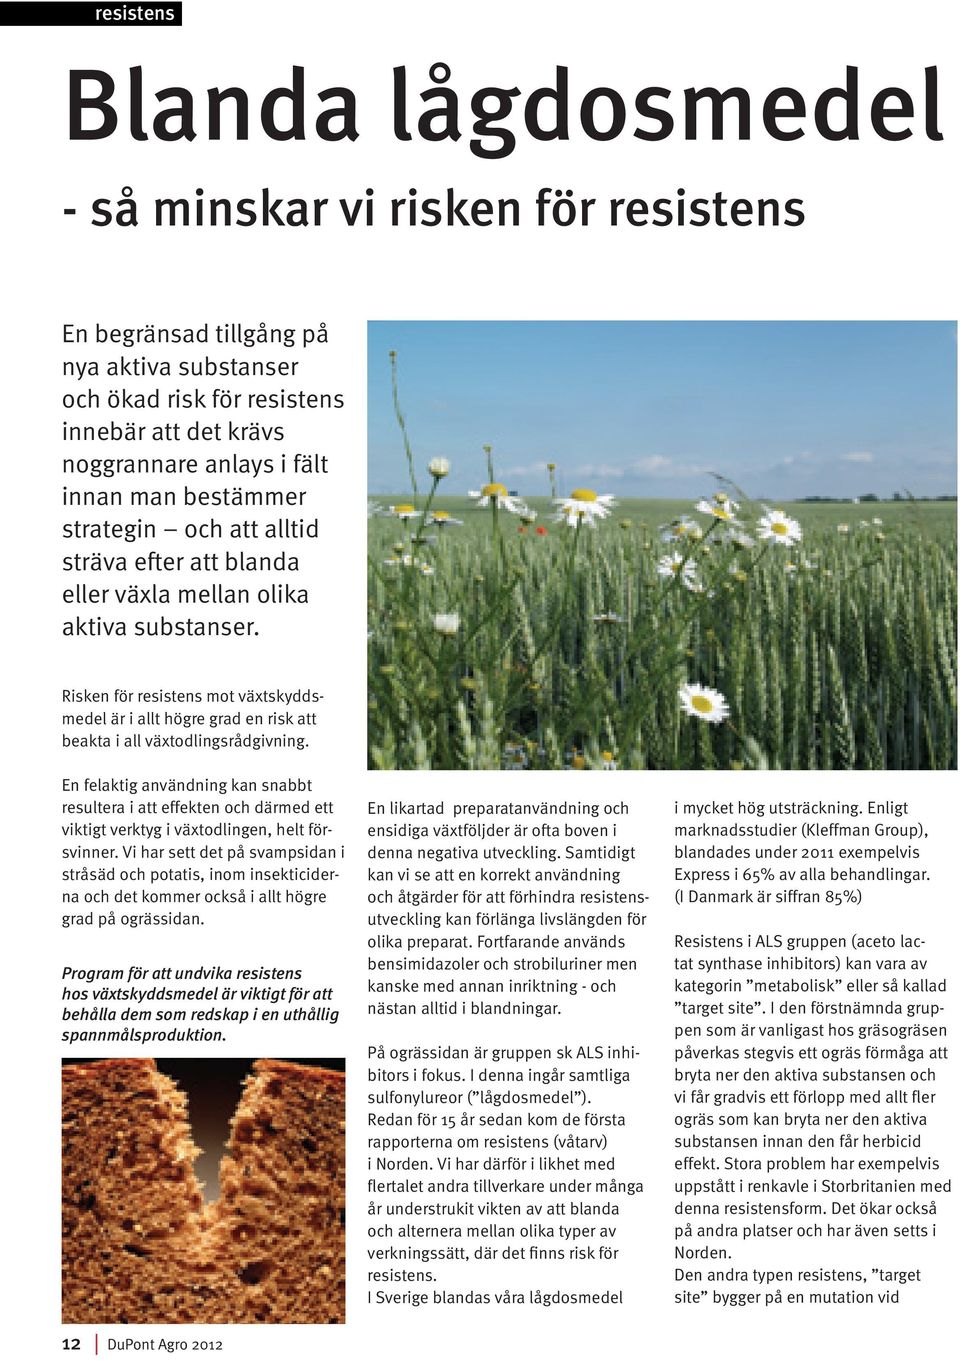 Risken för resistens mot växtskyddsmedel är i allt högre grad en risk att beakta i all växtodlingsrådgivning.